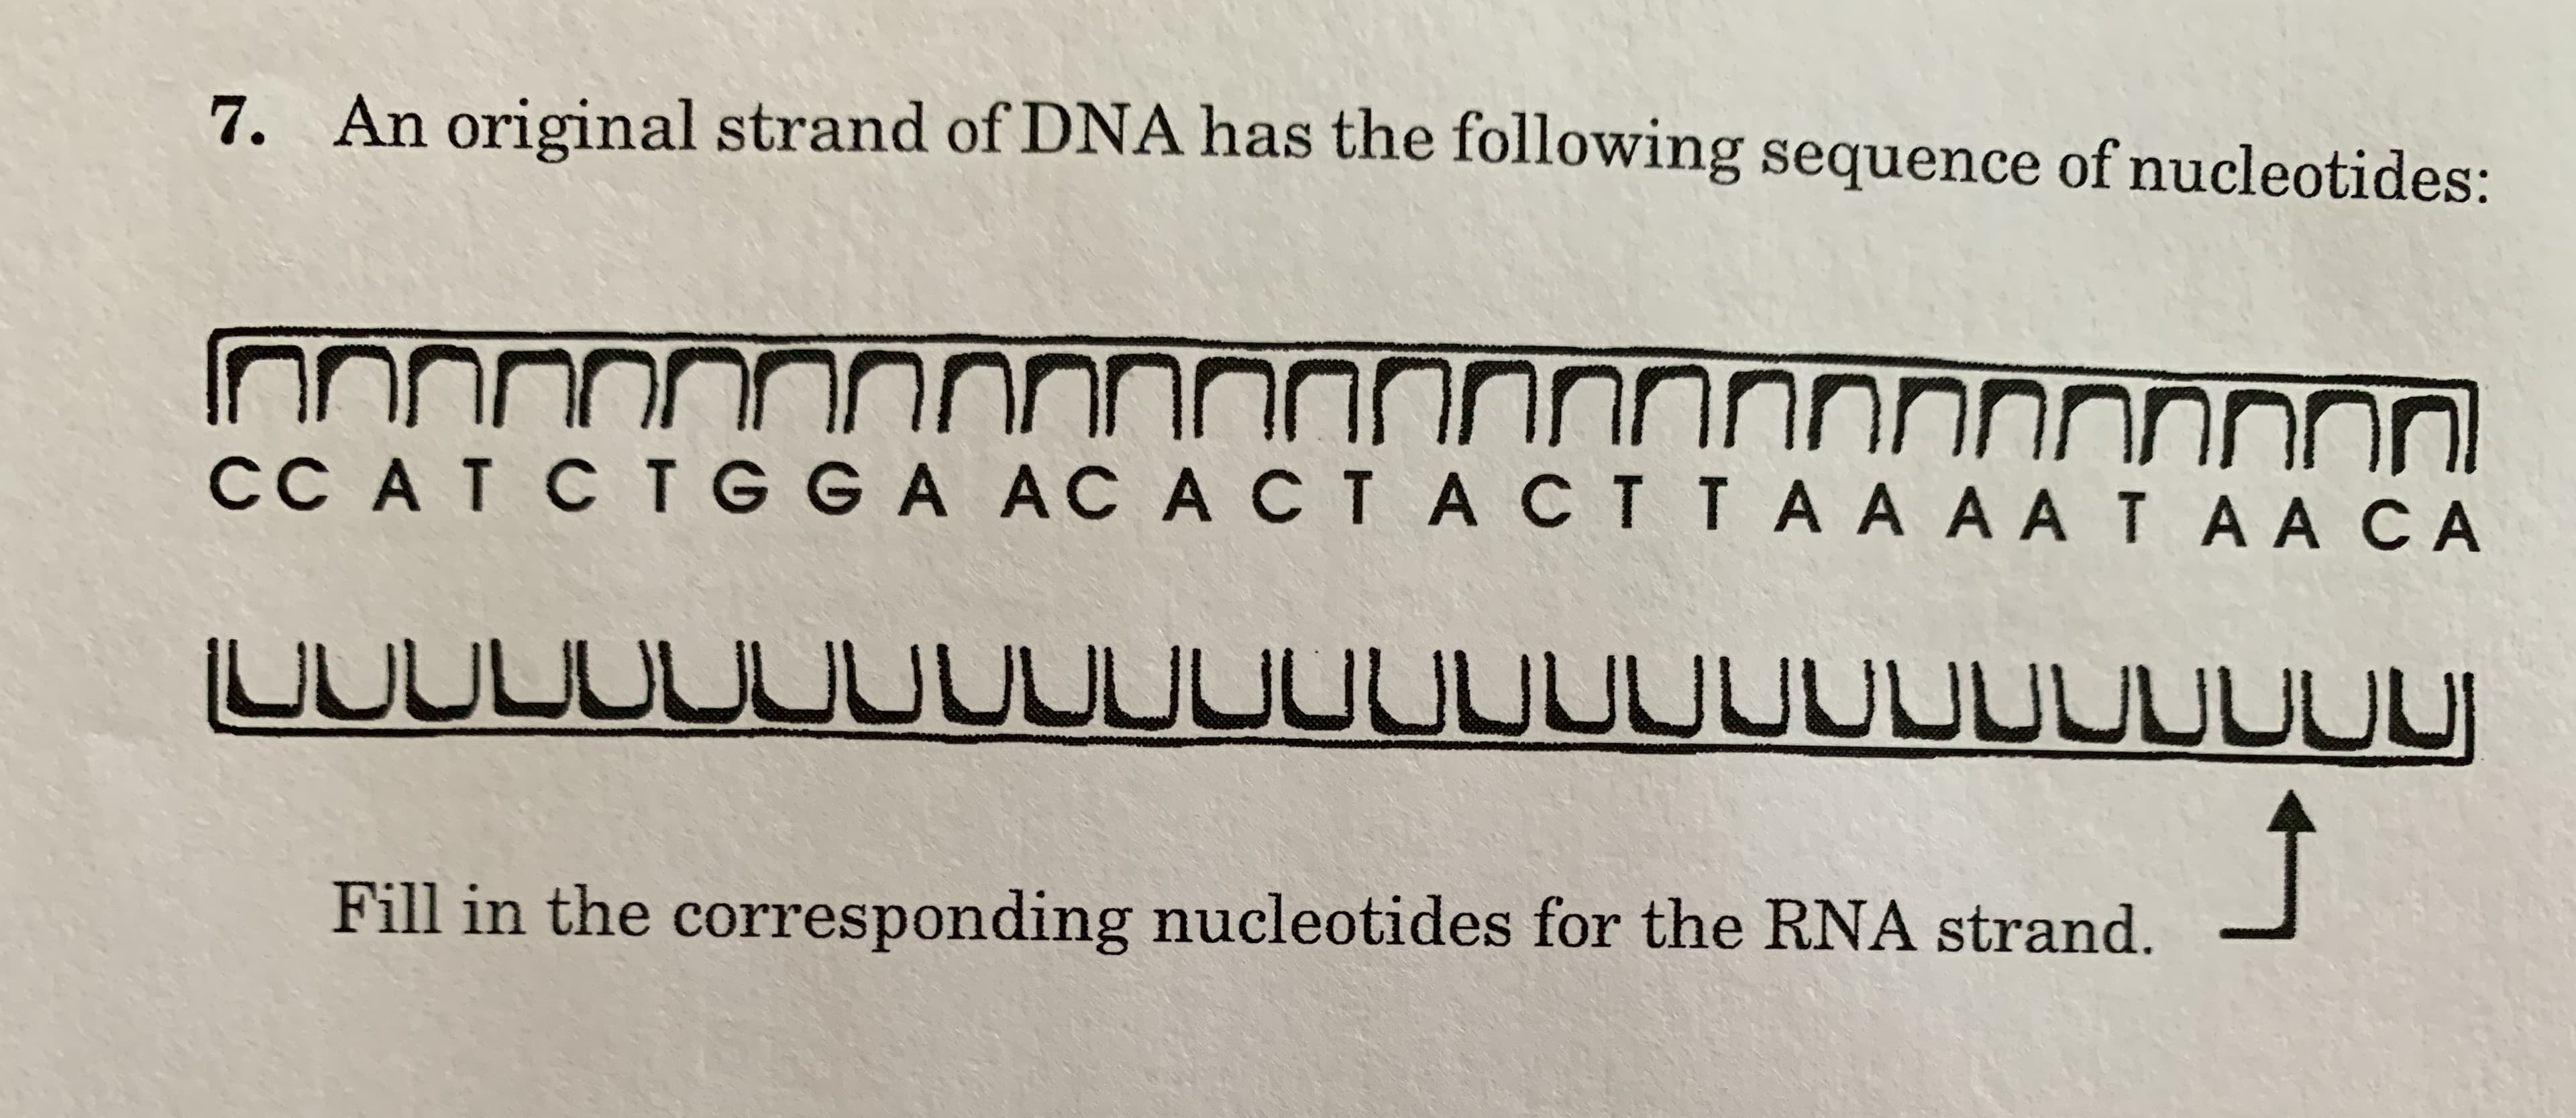 7. An original strand of DNA has the following sequence of nucleotides:
NNNNONNNNNNINN
CC AT CTGGA ACACTACTTAA AATAACA
nnnnnnOnNnNNnnnnnn
UUUDOUUUUUUUUUUUUUUUUUUUU
Fill in the corresponding nucleotides for the RNA strand.
